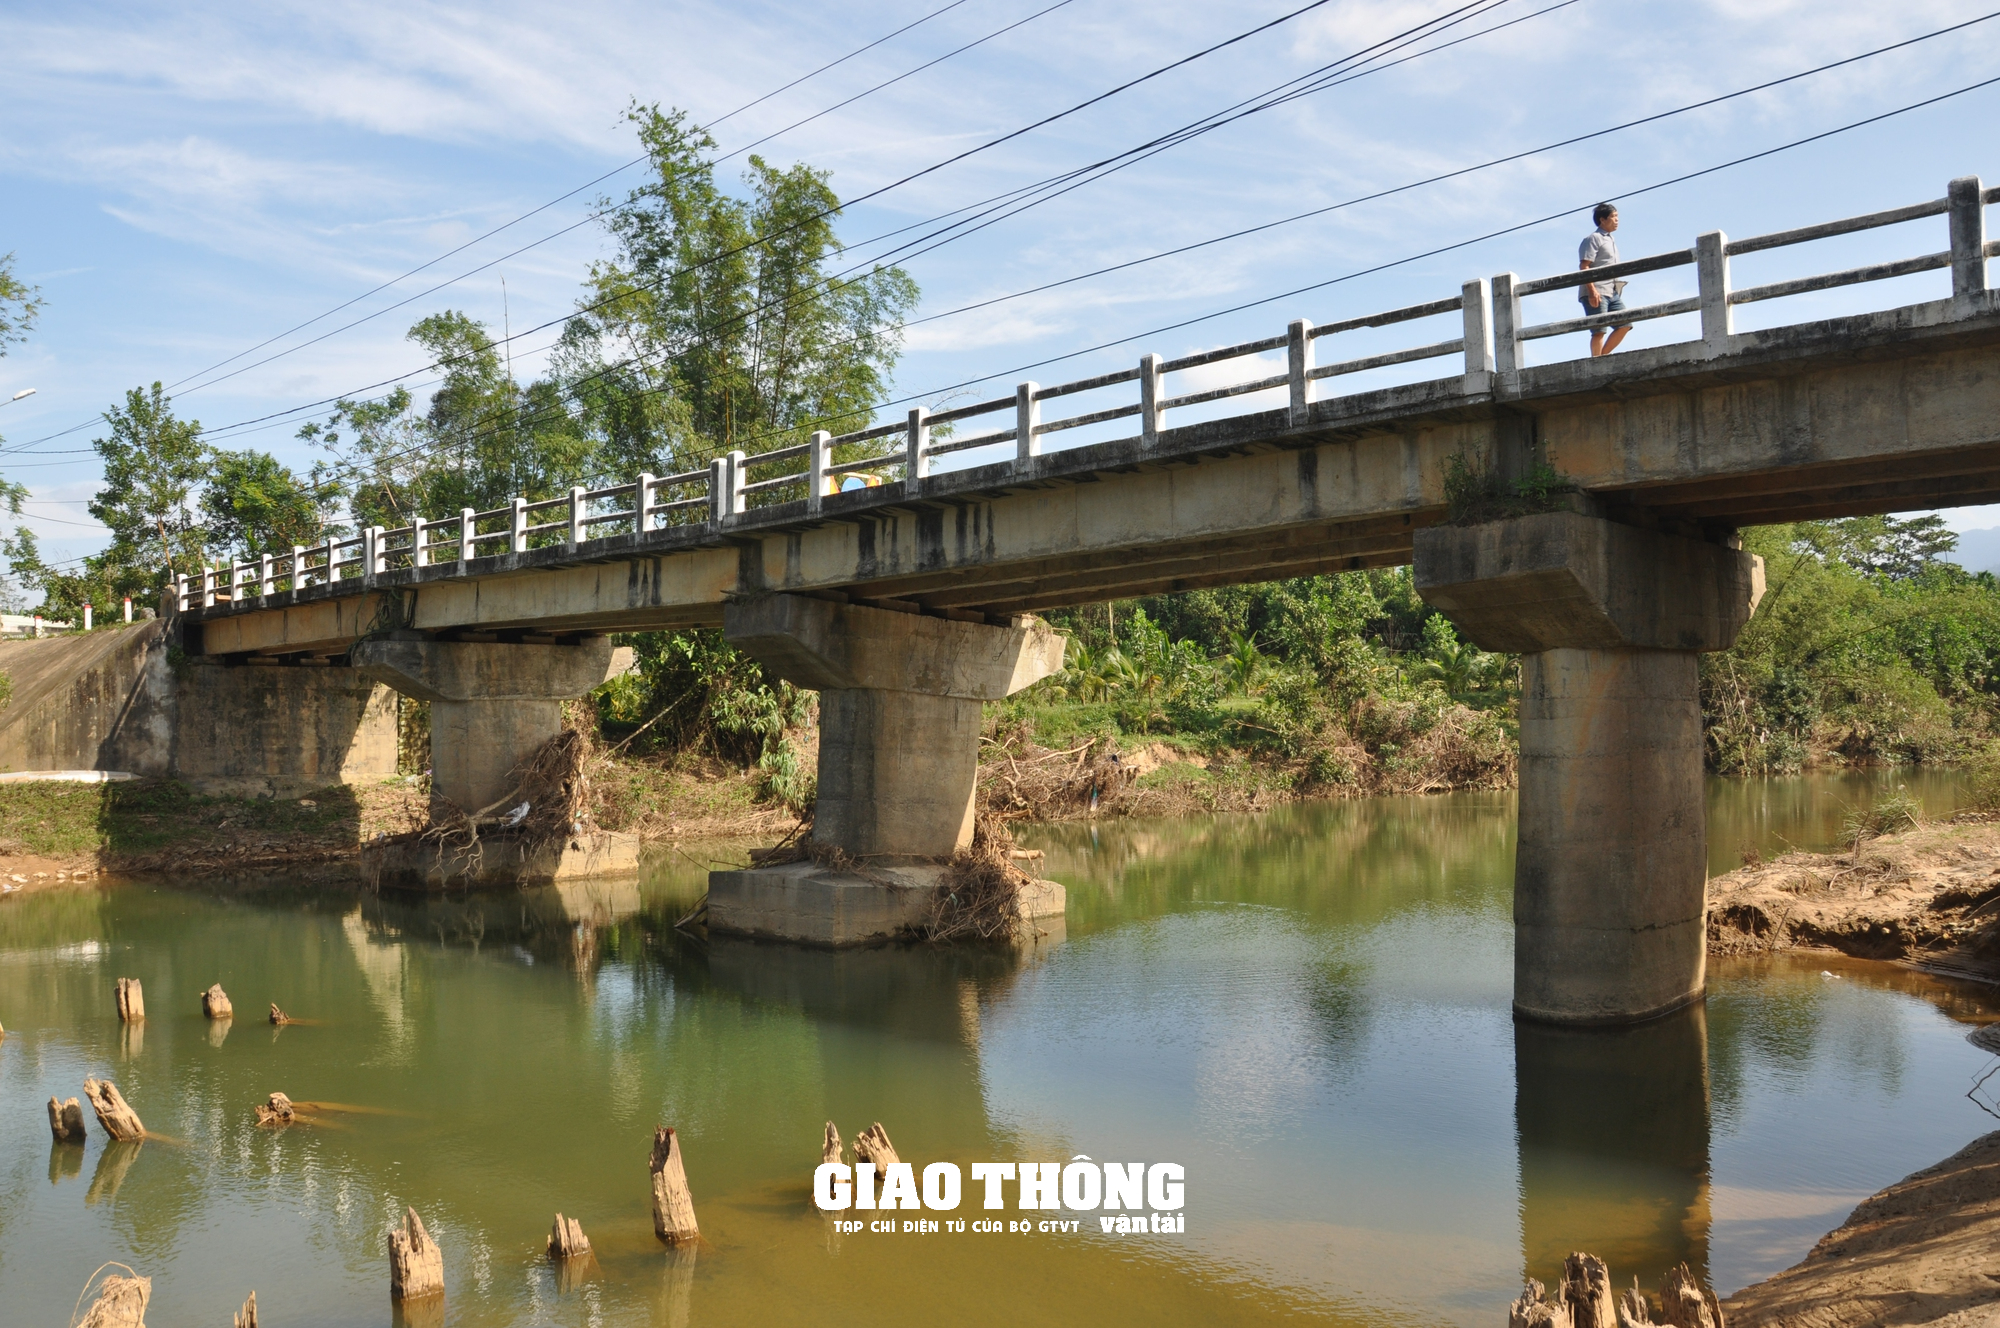 Cận cảnh cây cầu bất ngờ sụt lún, nguy cơ sụp đổ ở Quảng Nam - Ảnh 5.